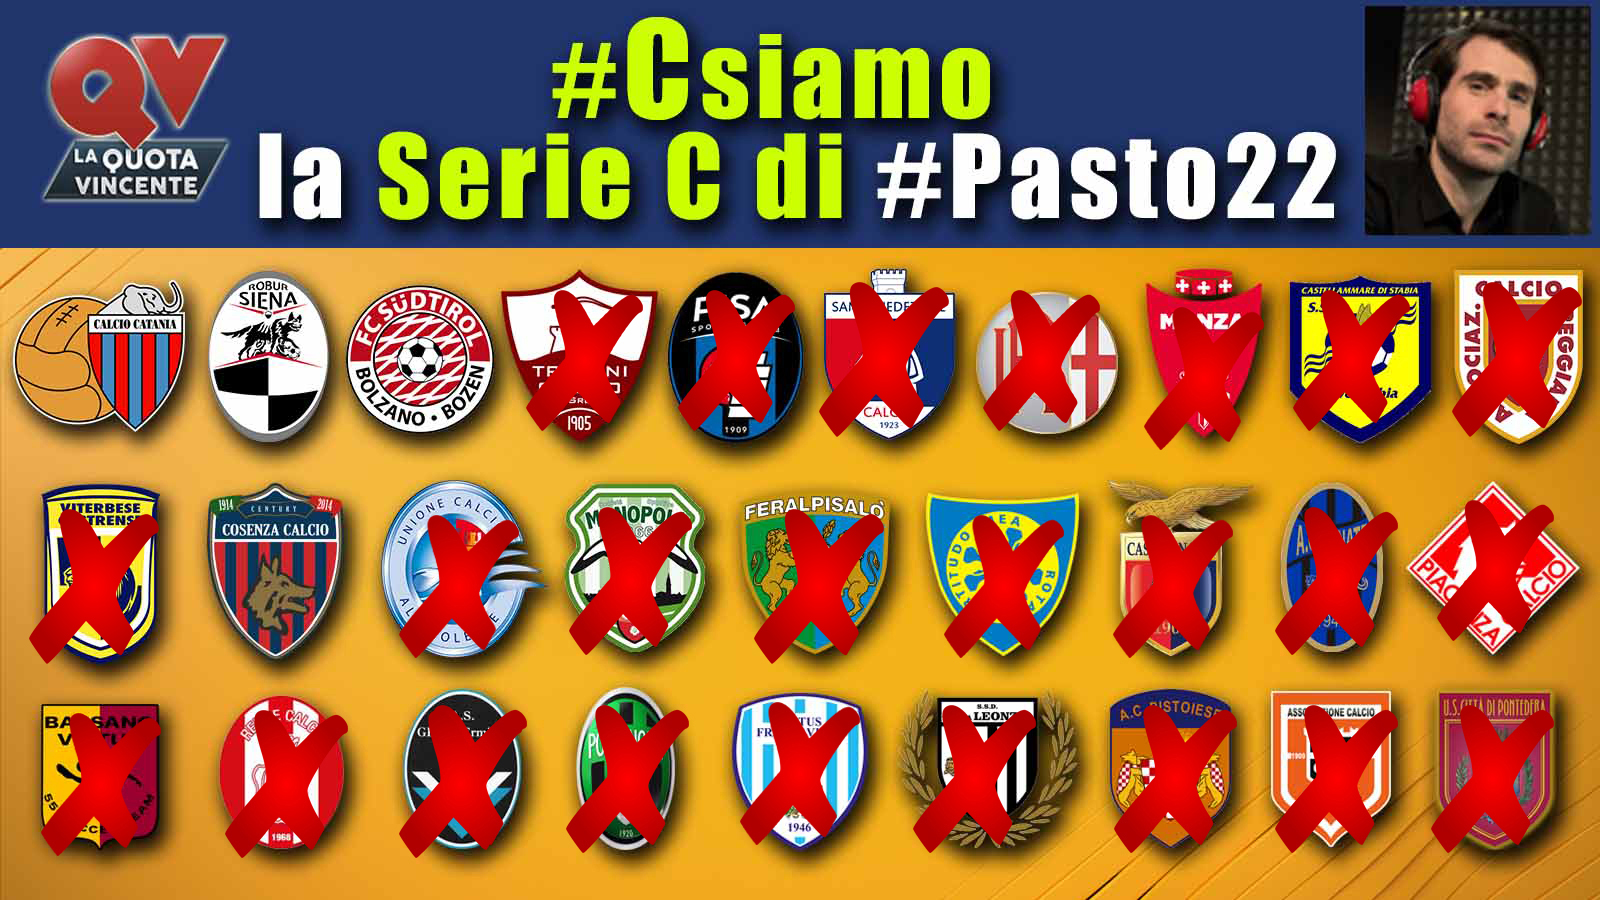 Pronostici Serie C 10 giugno: #Csiamo, il blog di #Pasto22 speciale playoff